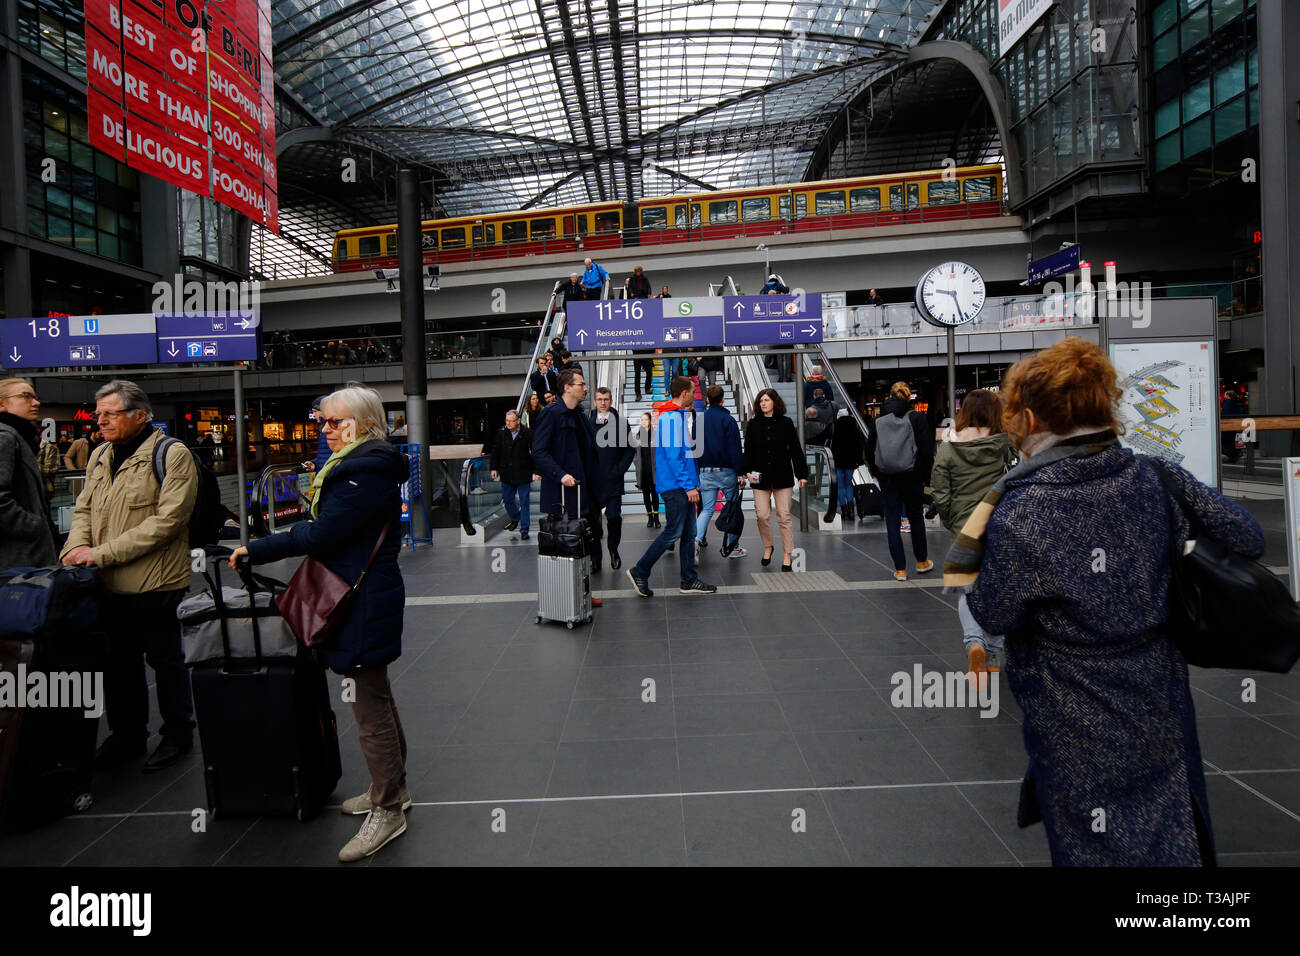 Pendler, Reisende, Touristen innerhalb des Einkaufszentrums Berlin Hauptbahnhof mit einer S-Bahn, die über den Kopf fährt, Berlin, Deutschland Stockfoto